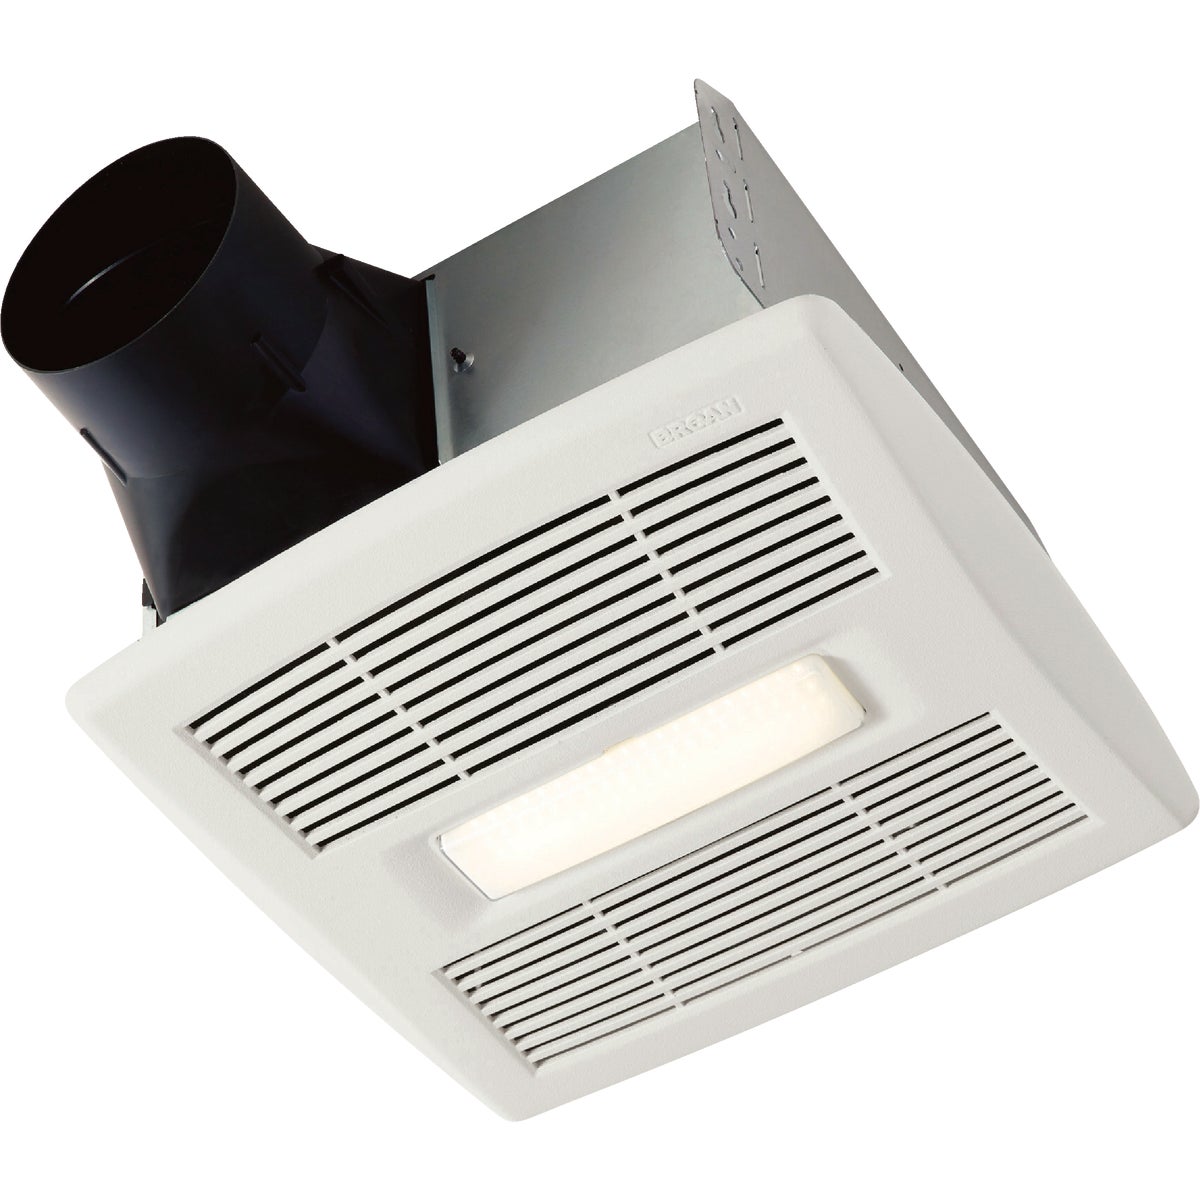 Broan Flex Series 80 CFM 1.2 Sones 120V Ventilation Fan with LED Light